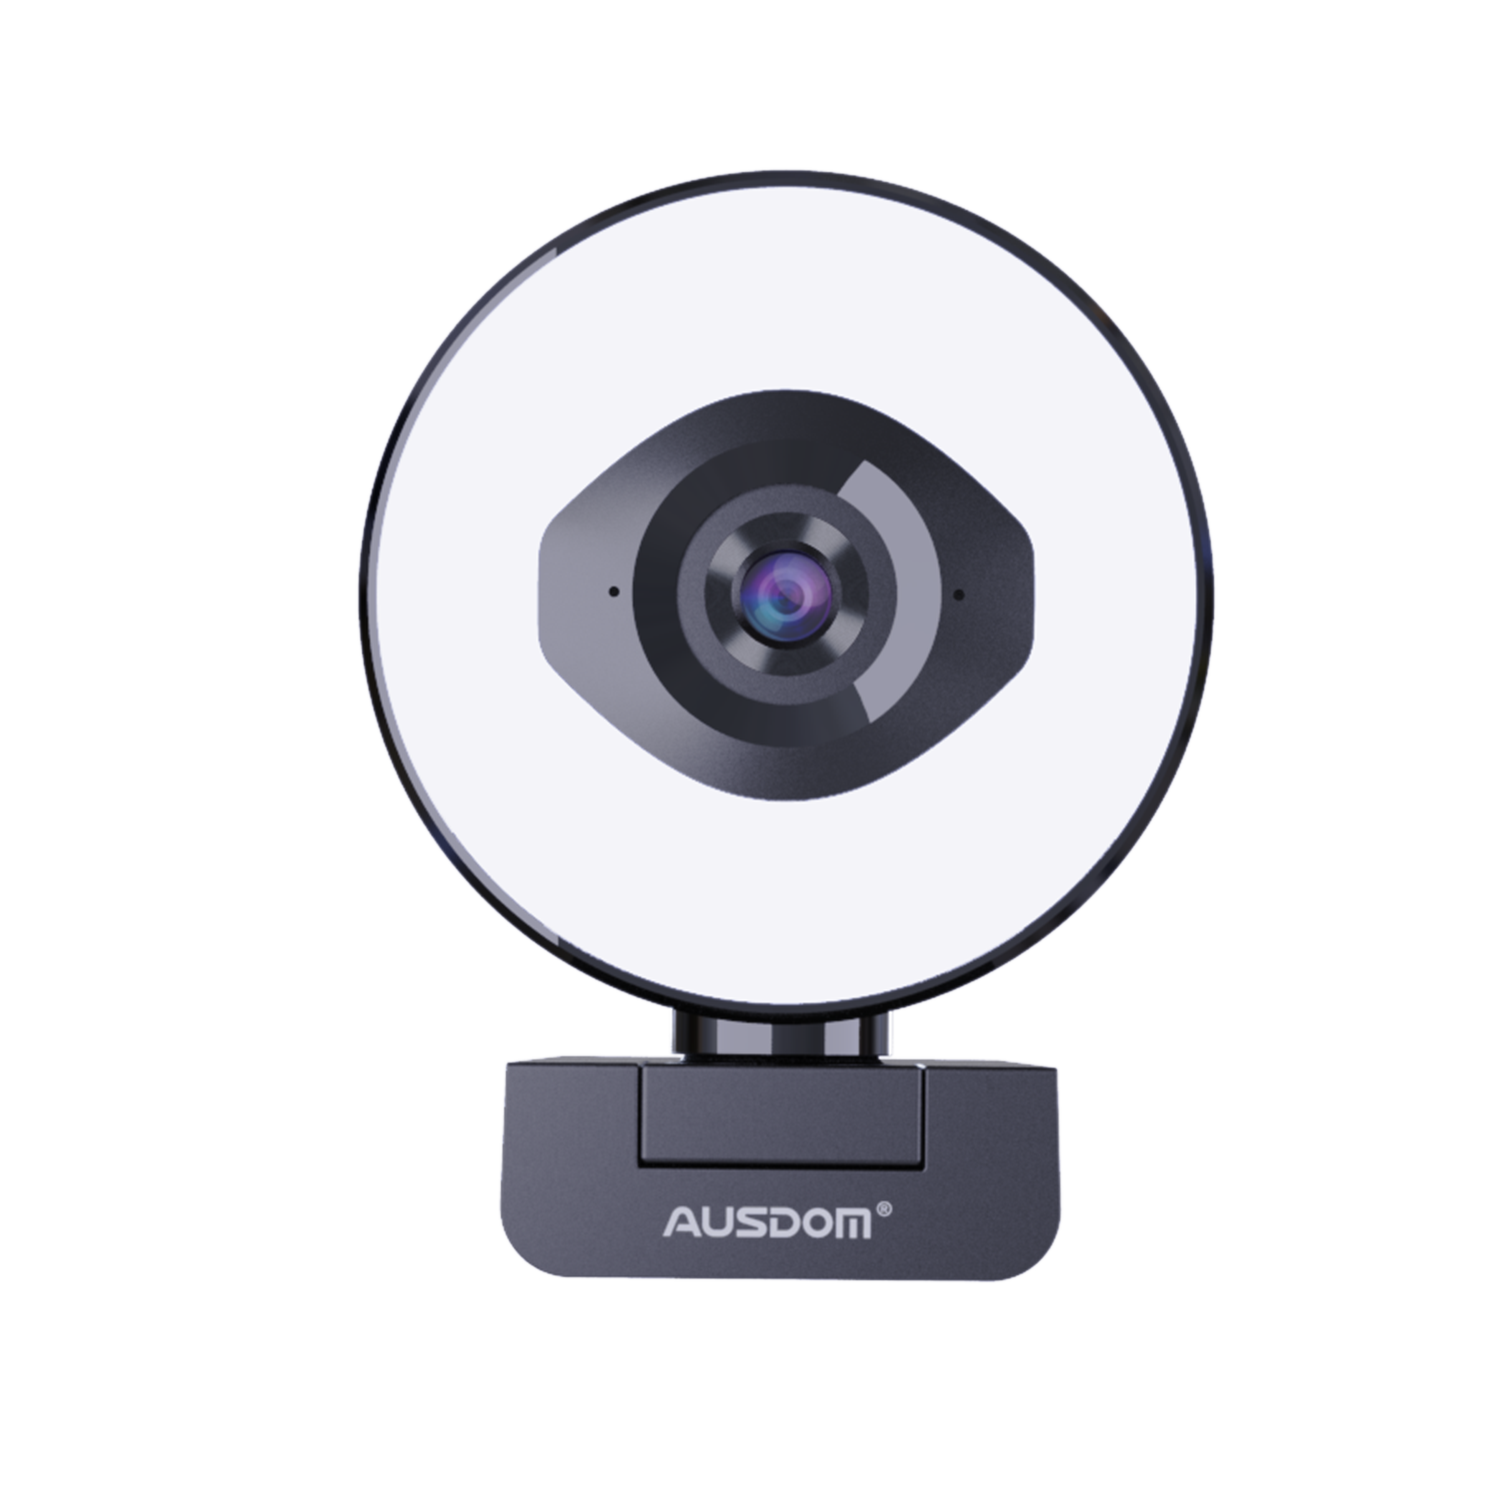 Stream Webcam 1080P 60fps, AUSDOM AF660 StreamCam with Dual Microphone